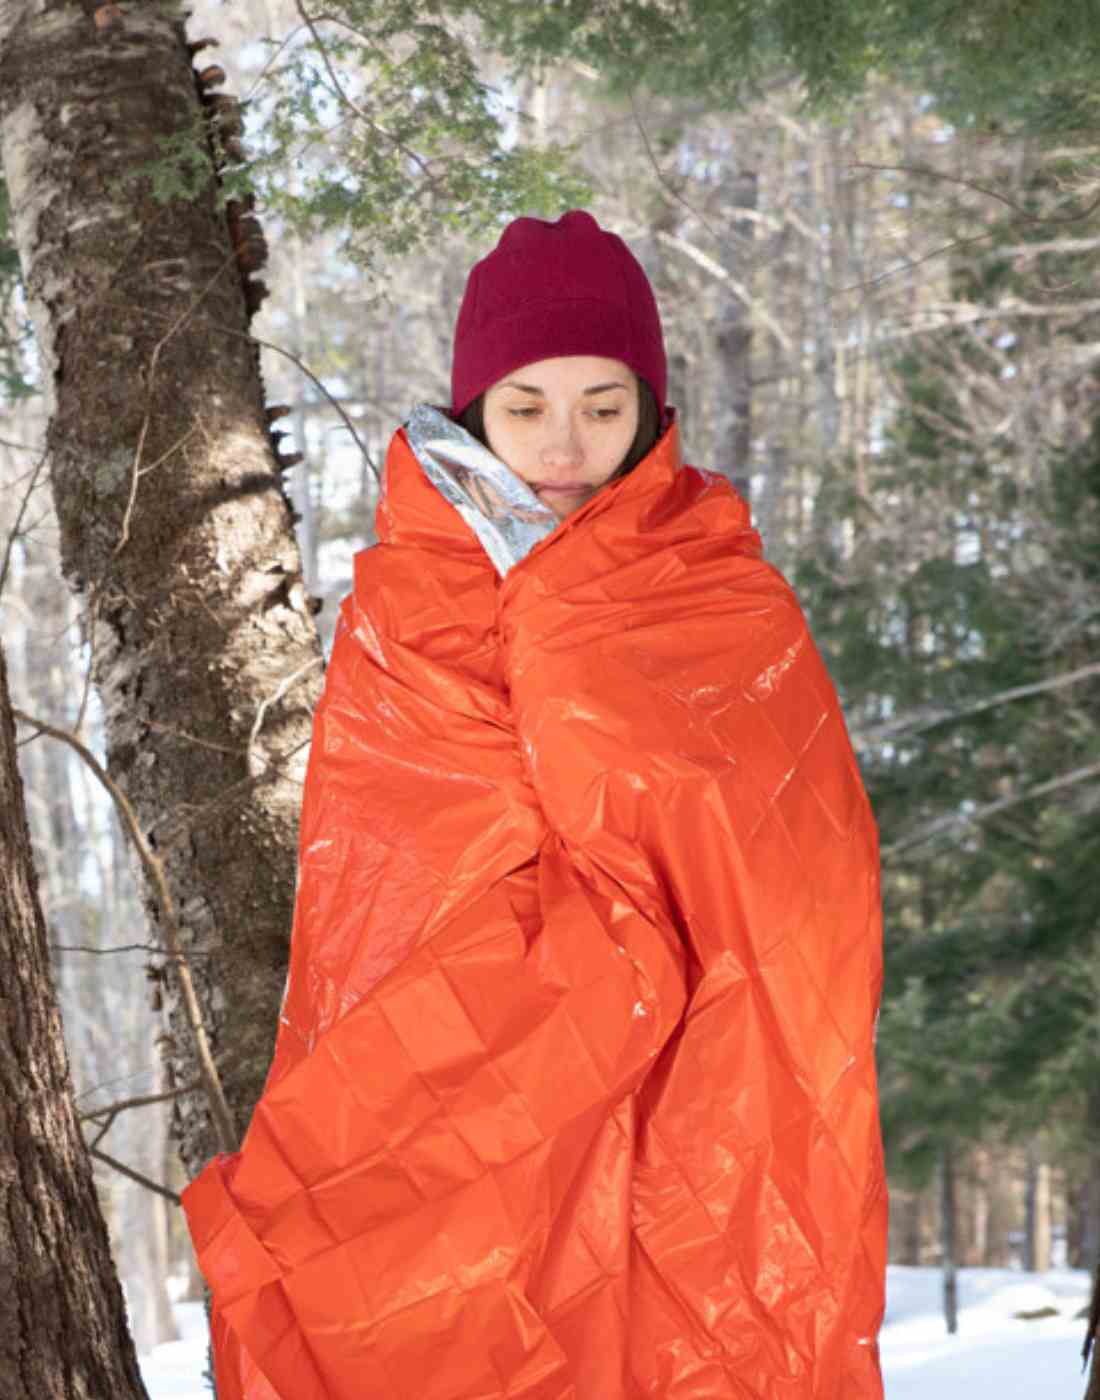 Woman in Snowy Landscape Wrapped in SOL Emergency Blanket